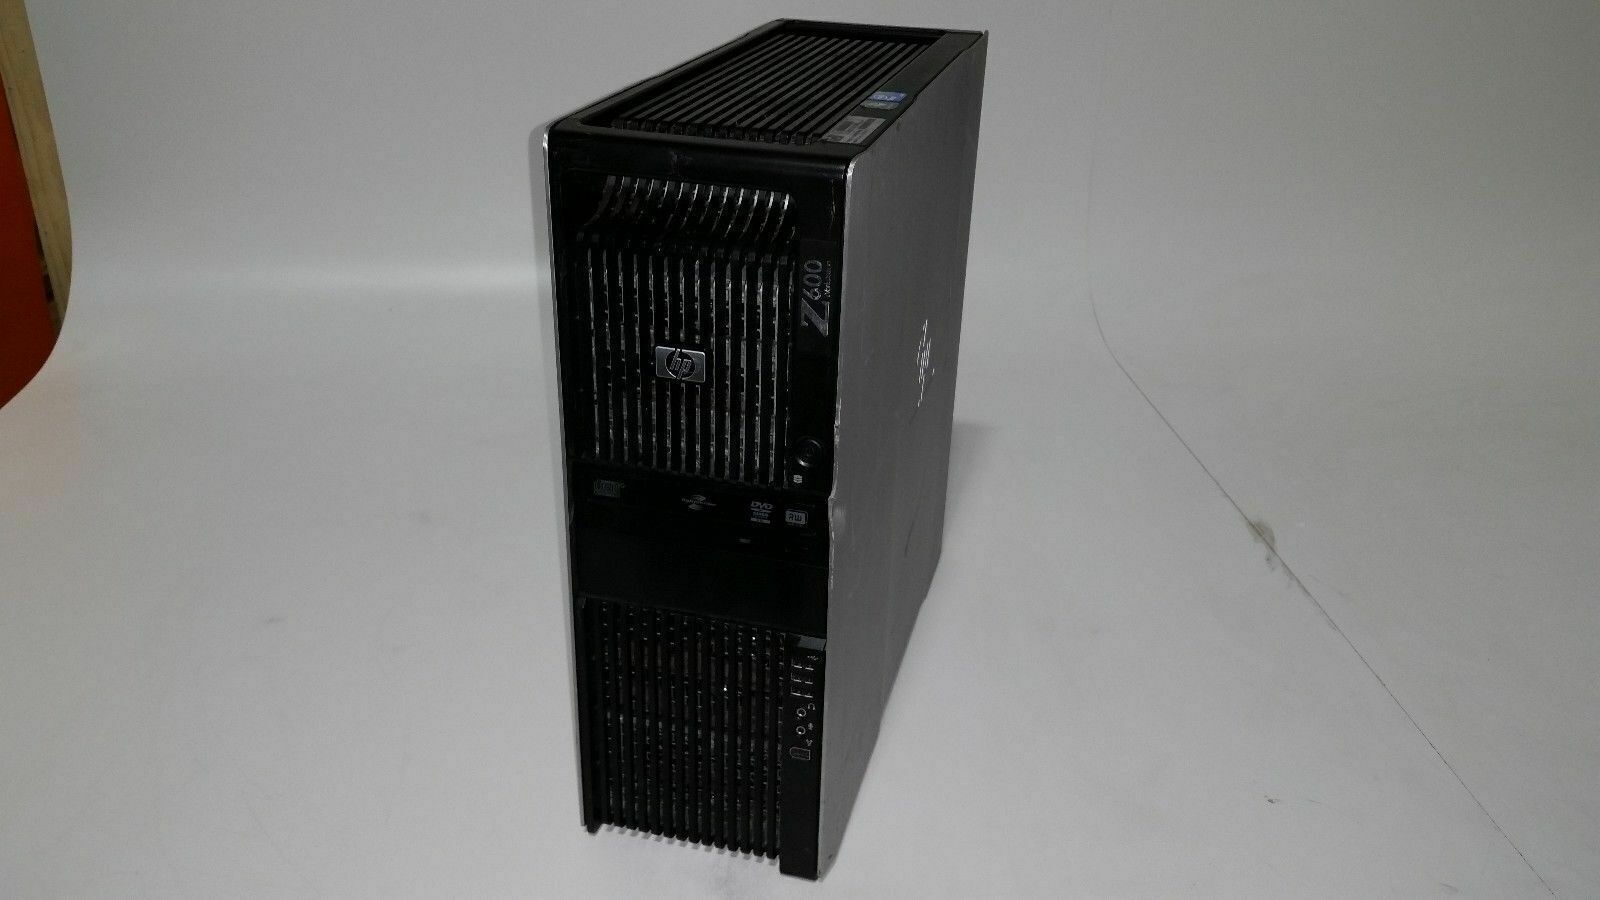 HP Z600 Workstation 2x X5570 2.93GHz 8-Cores  24gb  1tb  DVD-RW  Win10